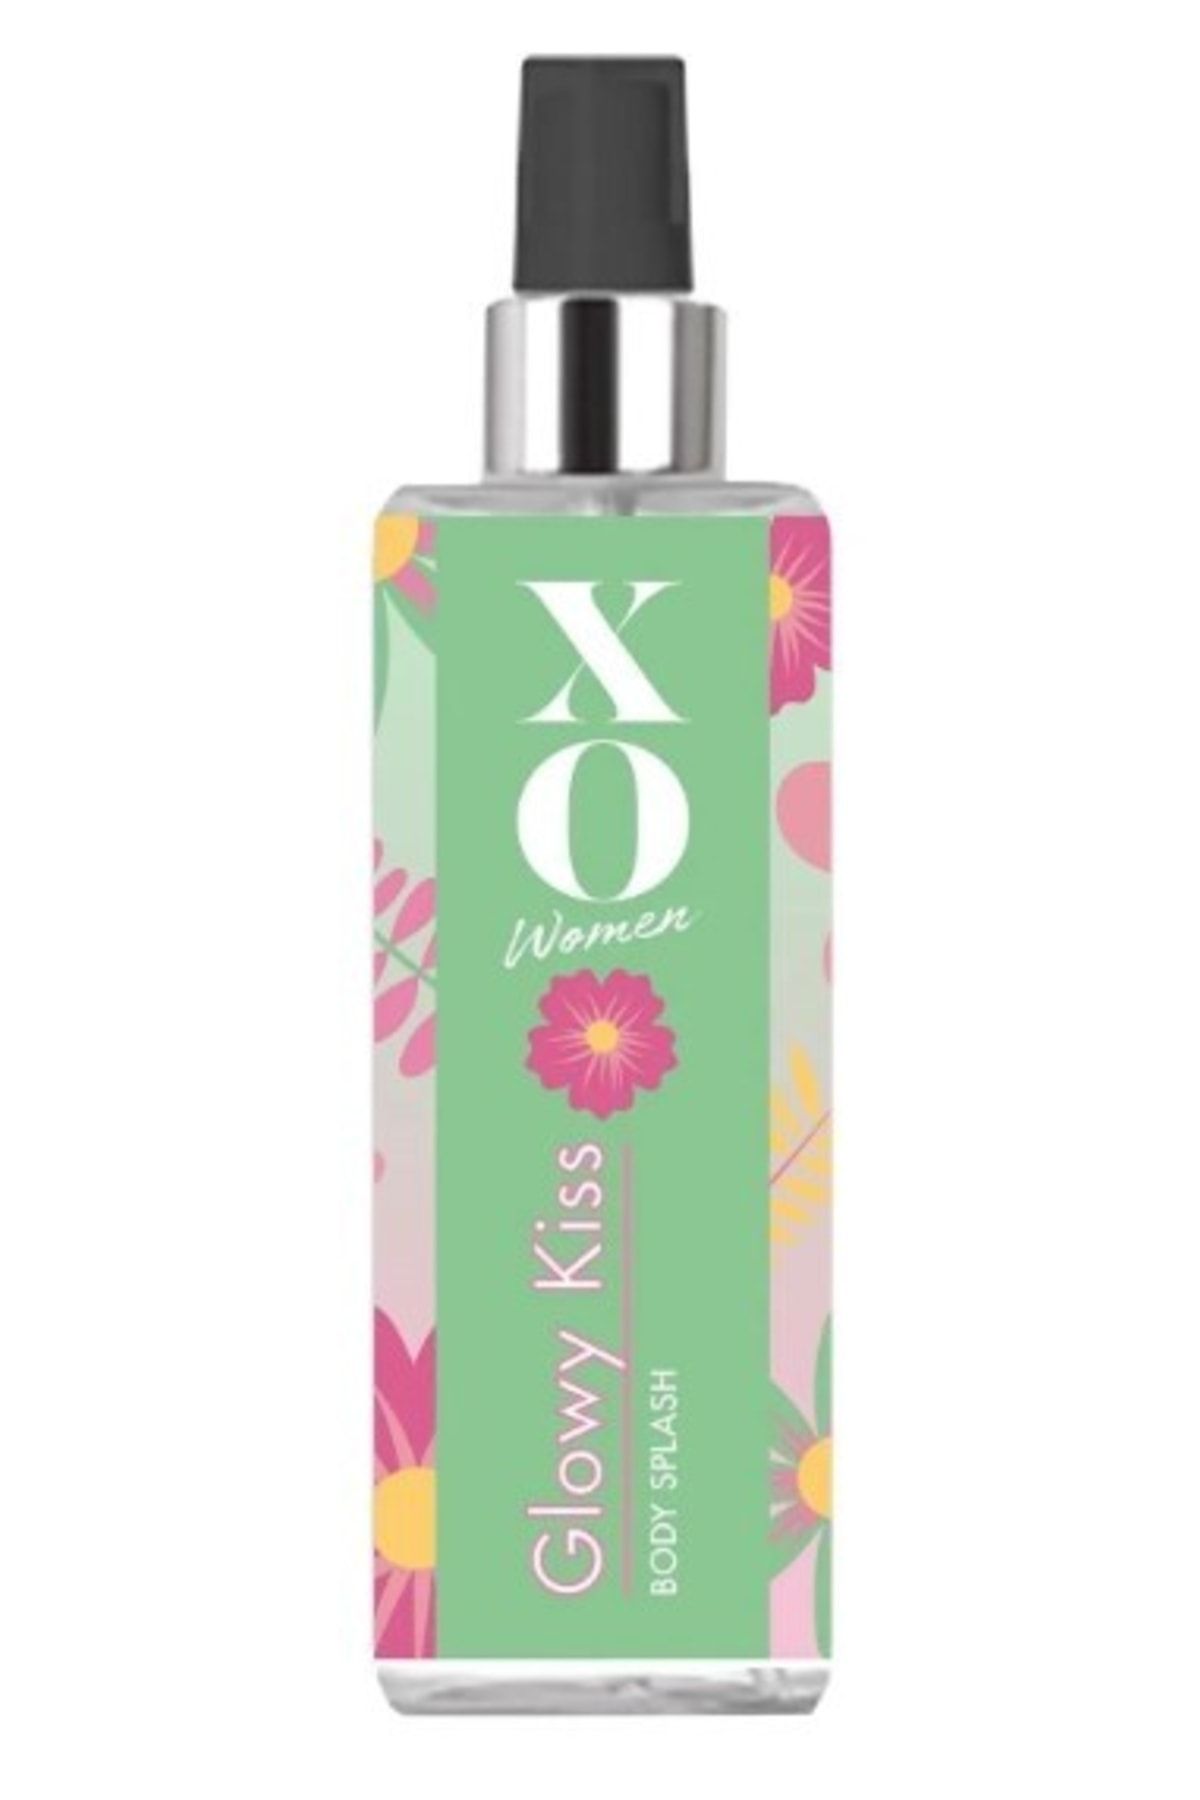 Xo Deodorant - Body Splash Glowy Kiss 150 ml - 150 ml